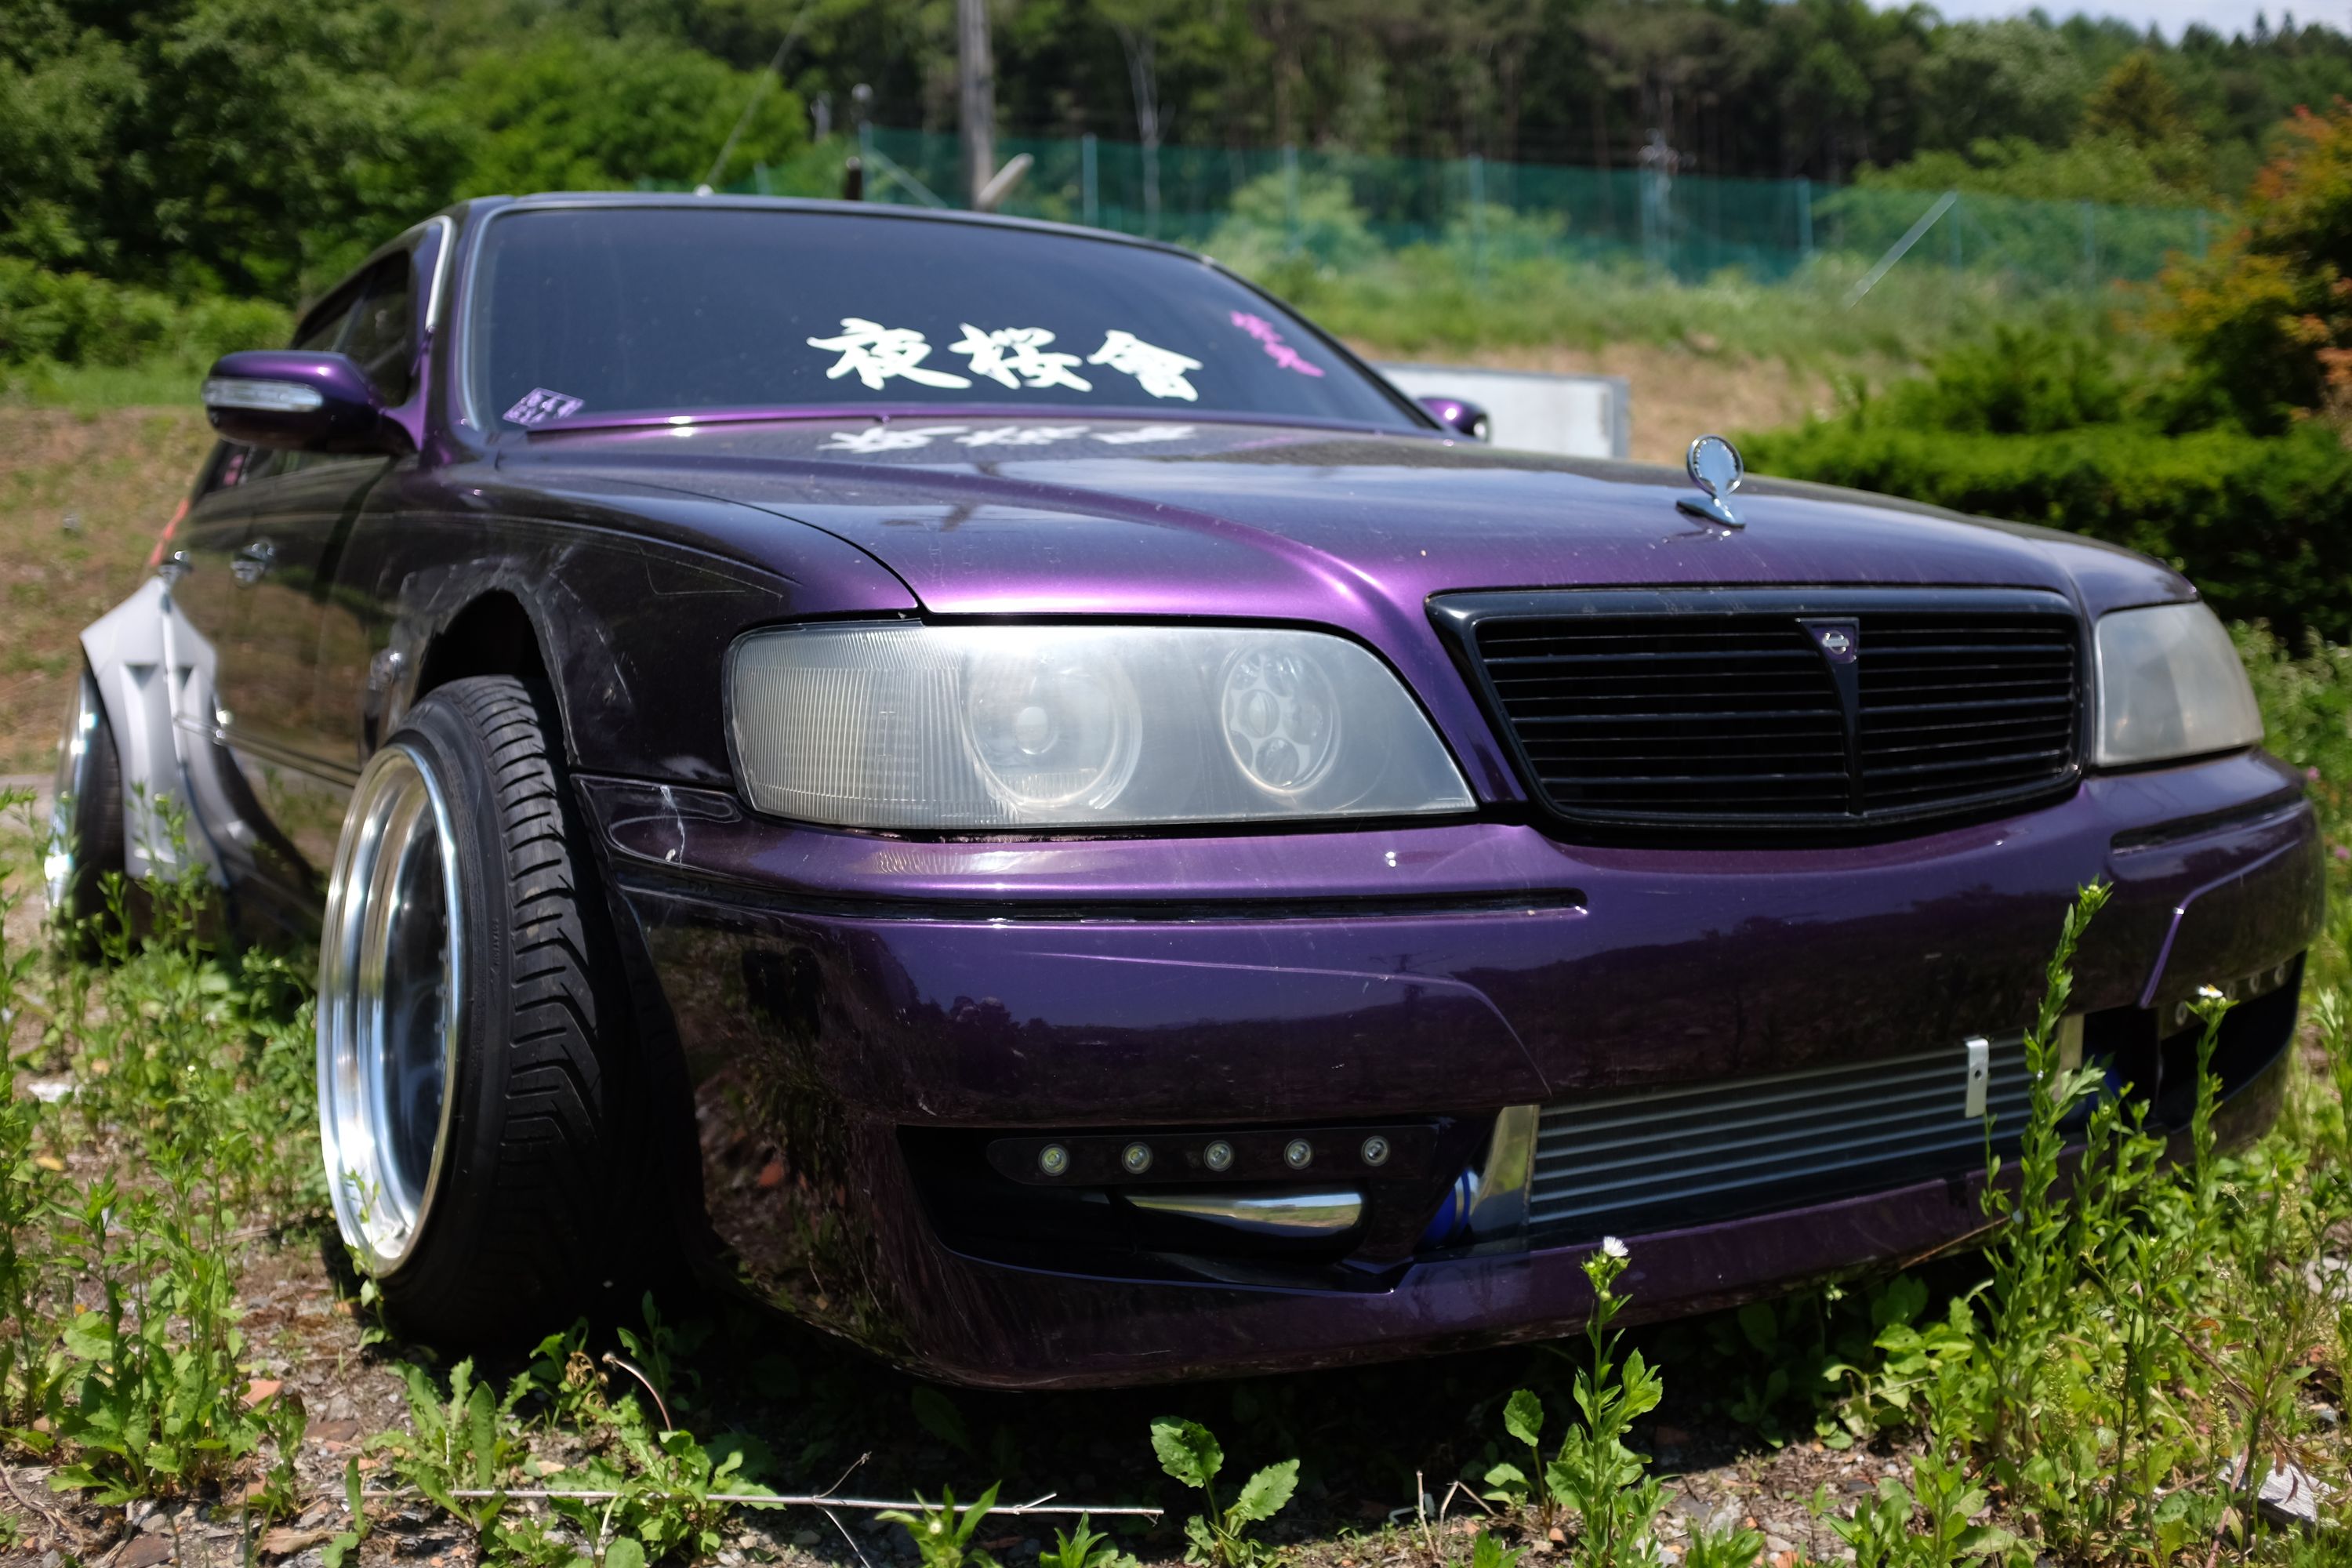 A bosozuku-style purple Nissan.